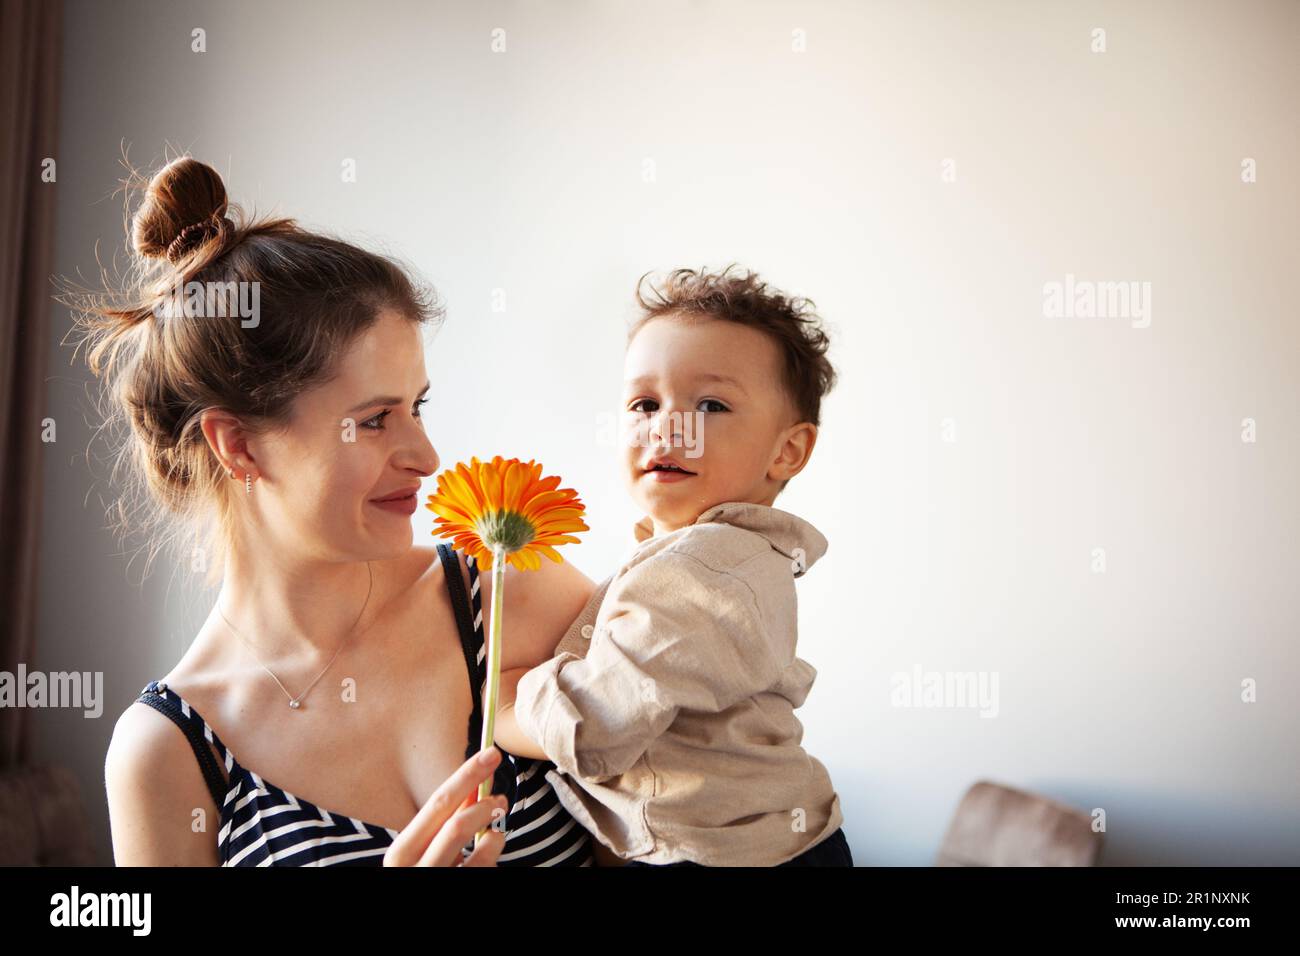 Mamma che tiene in mano il bambino, che guarda nella fotocamera mentre si aggrappano i fiori. Vita reale e autenticità su sfondo chiaro. Foto Stock